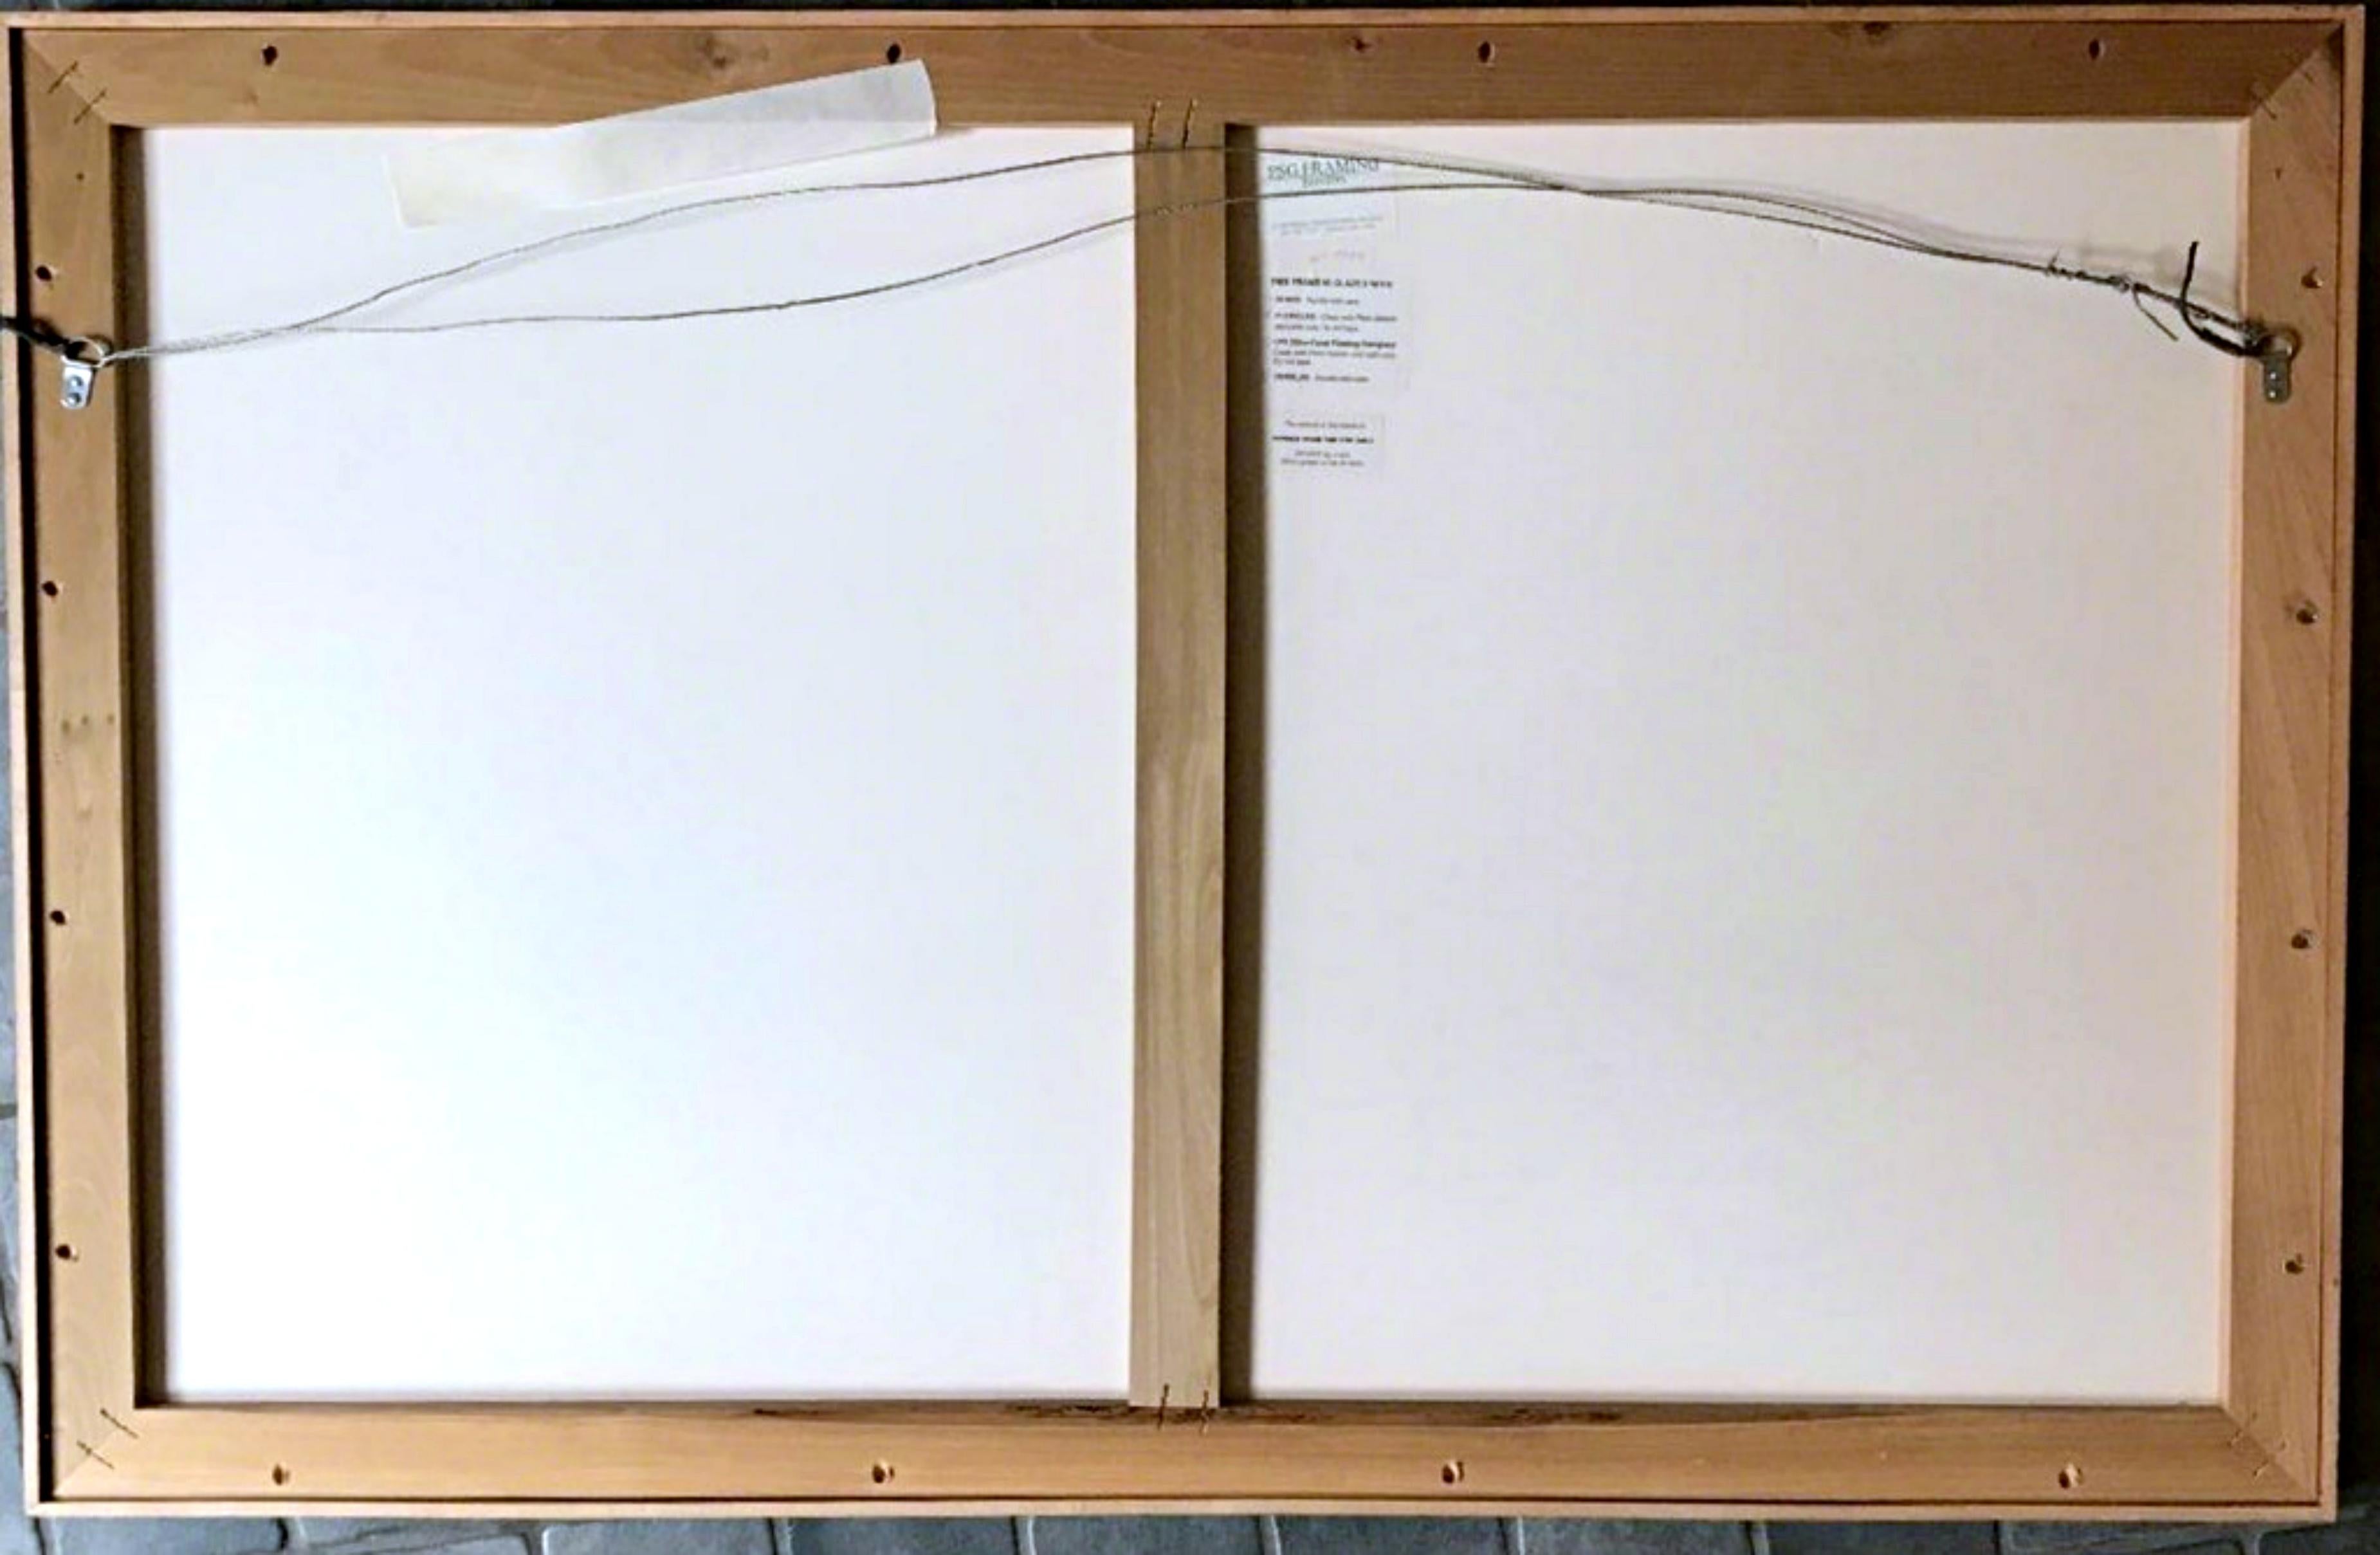 Michael Heizer
III-8 (deux œuvres uniques), 1983
Monoprint sur deux feuilles individuelles de papier TGL blanc fait main, coloré à la main avec des crayons de couleur, des bâtons de peinture, et des peintures acryliques liquides et en spray.
Signée